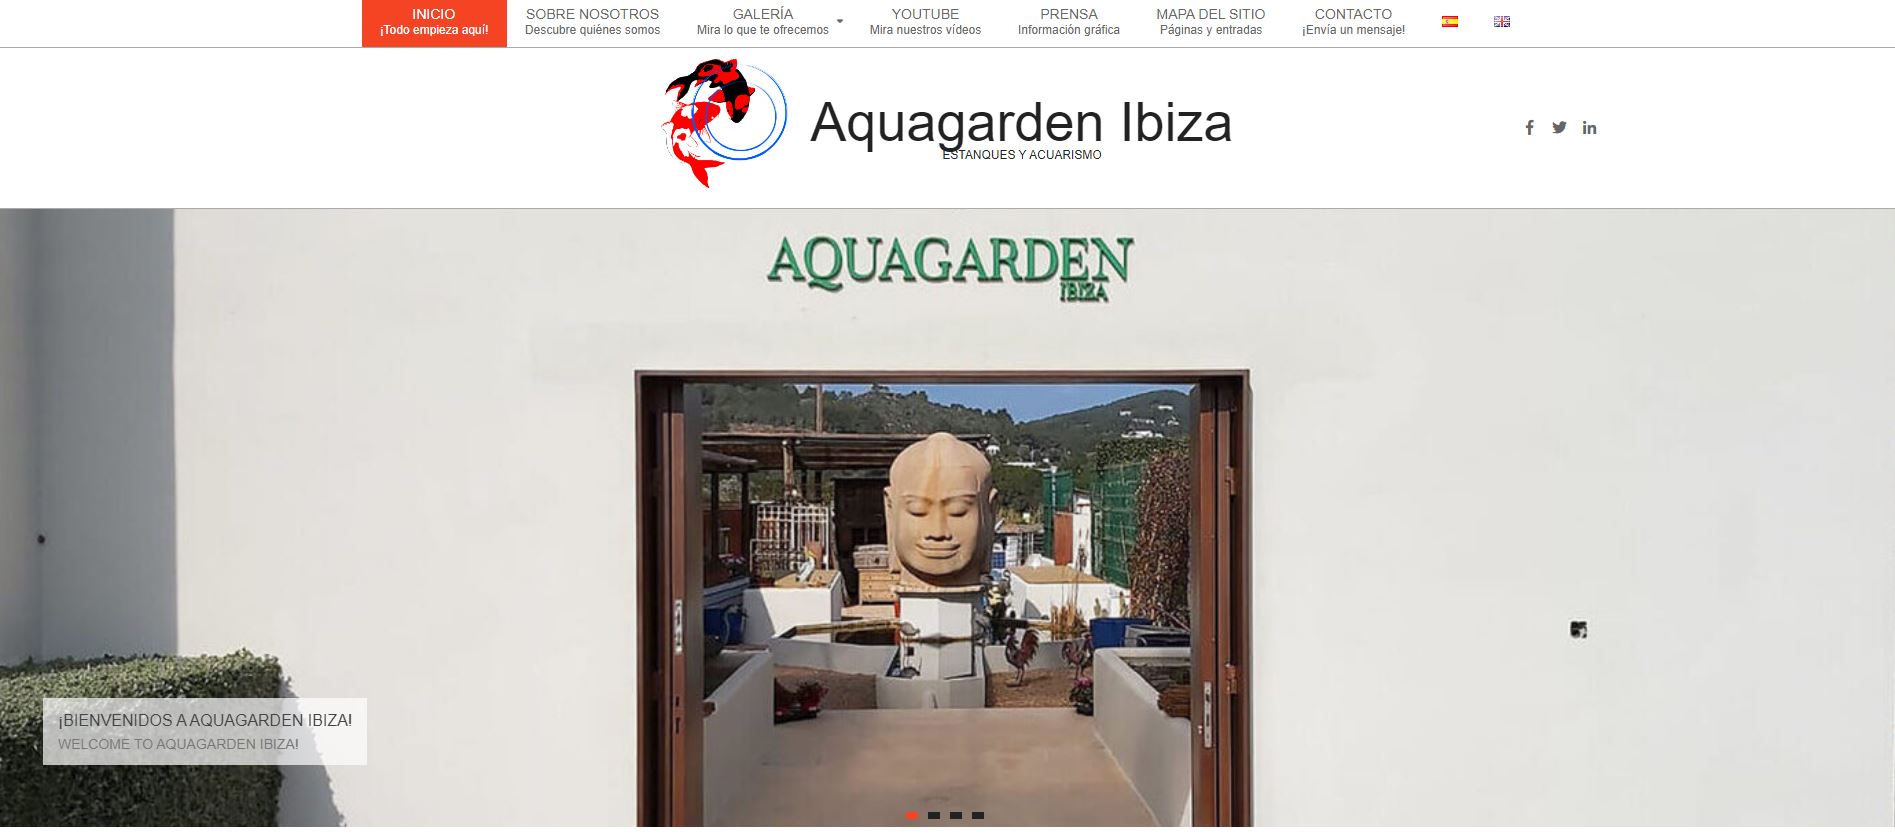 imagen de la página de inicio de Aquagarden Ibiza.